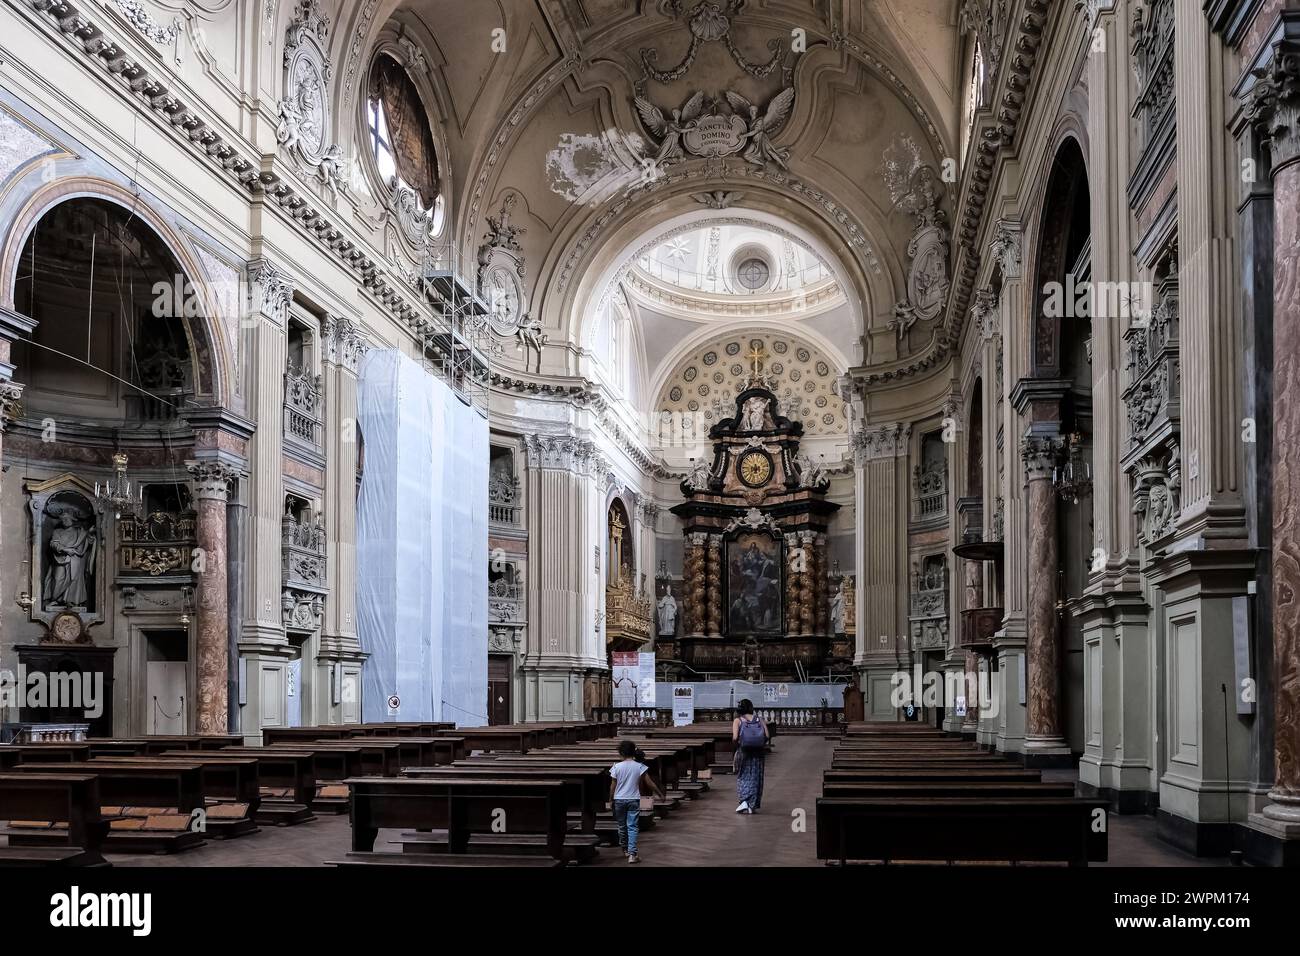 Architektonische Details von San Filippo Neri, einer römisch-katholischen Kirche im spätbarocken Stil, der größten Kirche der Stadt, Turin, Piemont, Italien, Eruope Stockfoto